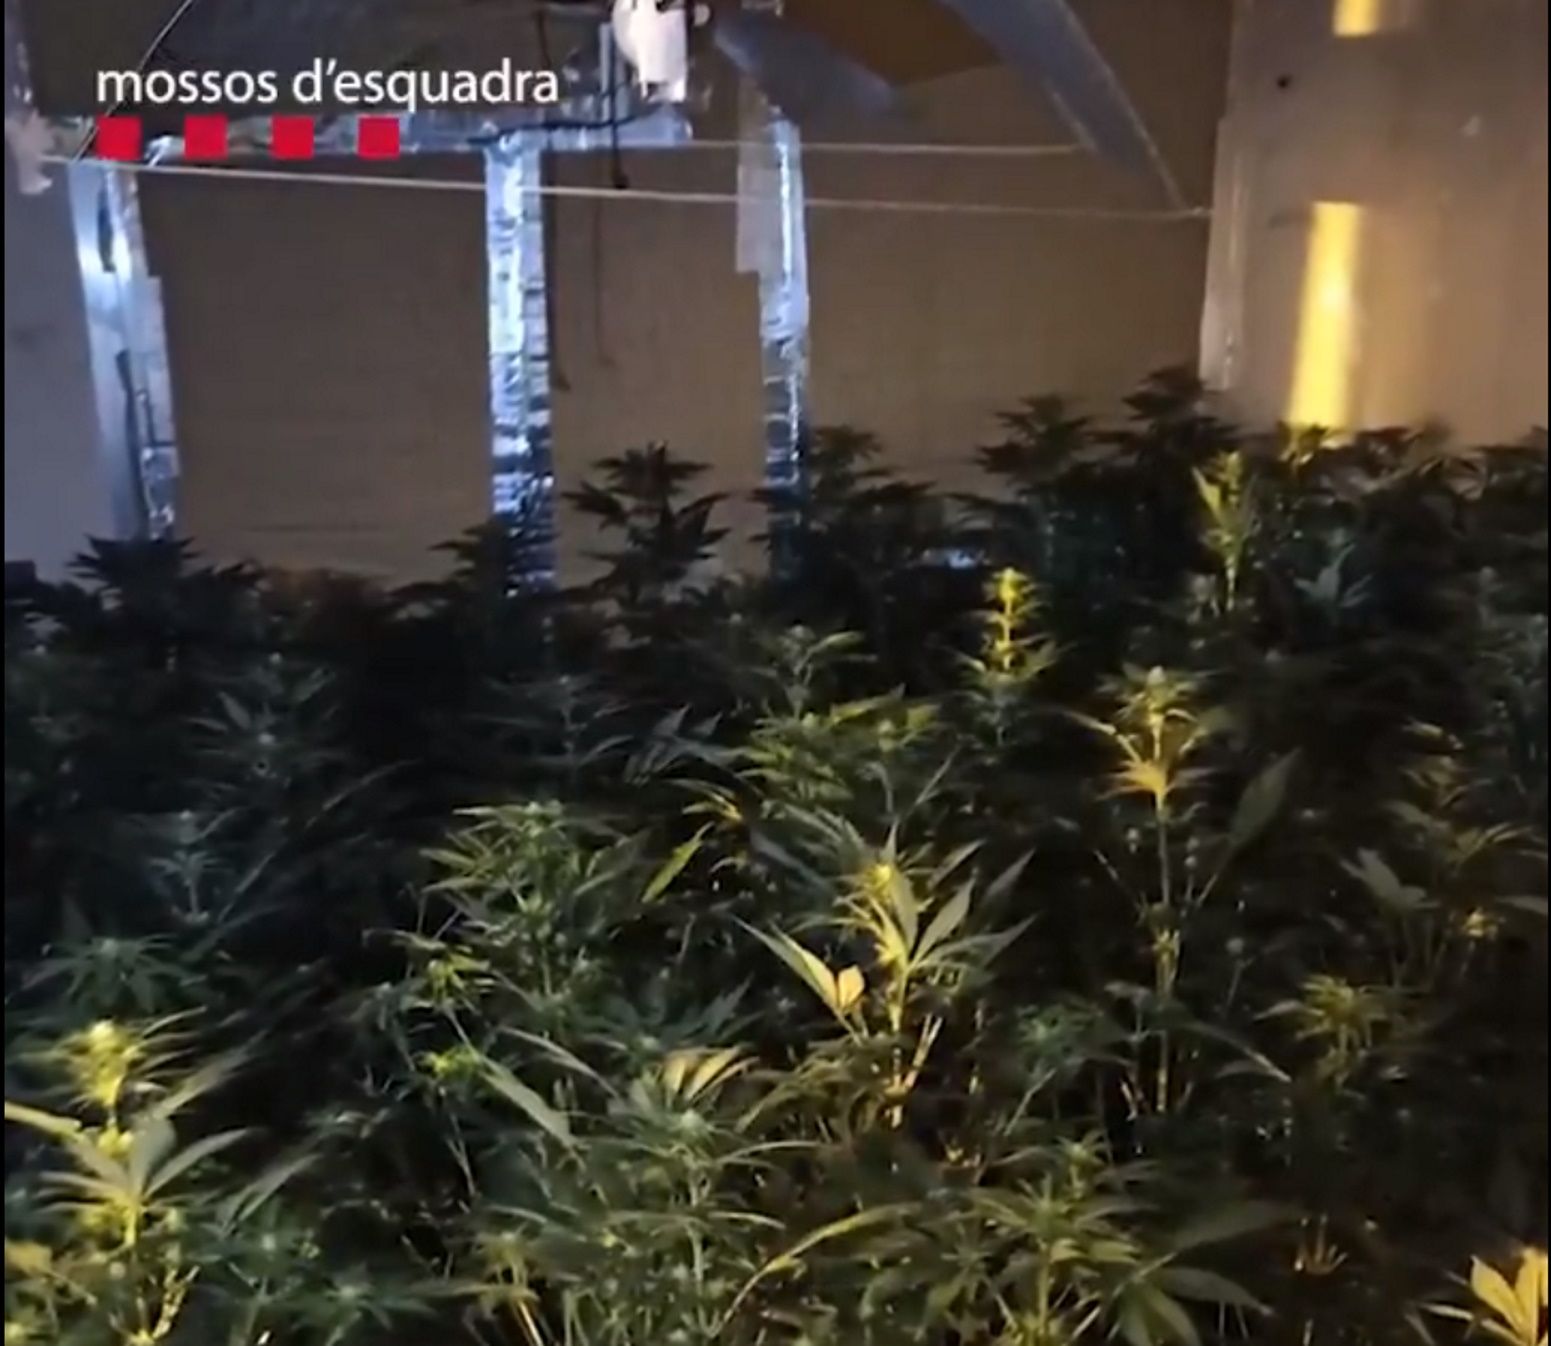 Los Mossos desmantelan un piso de narcotráfico en Sants-Montjuic / RRSS Mossos d'Esquadra